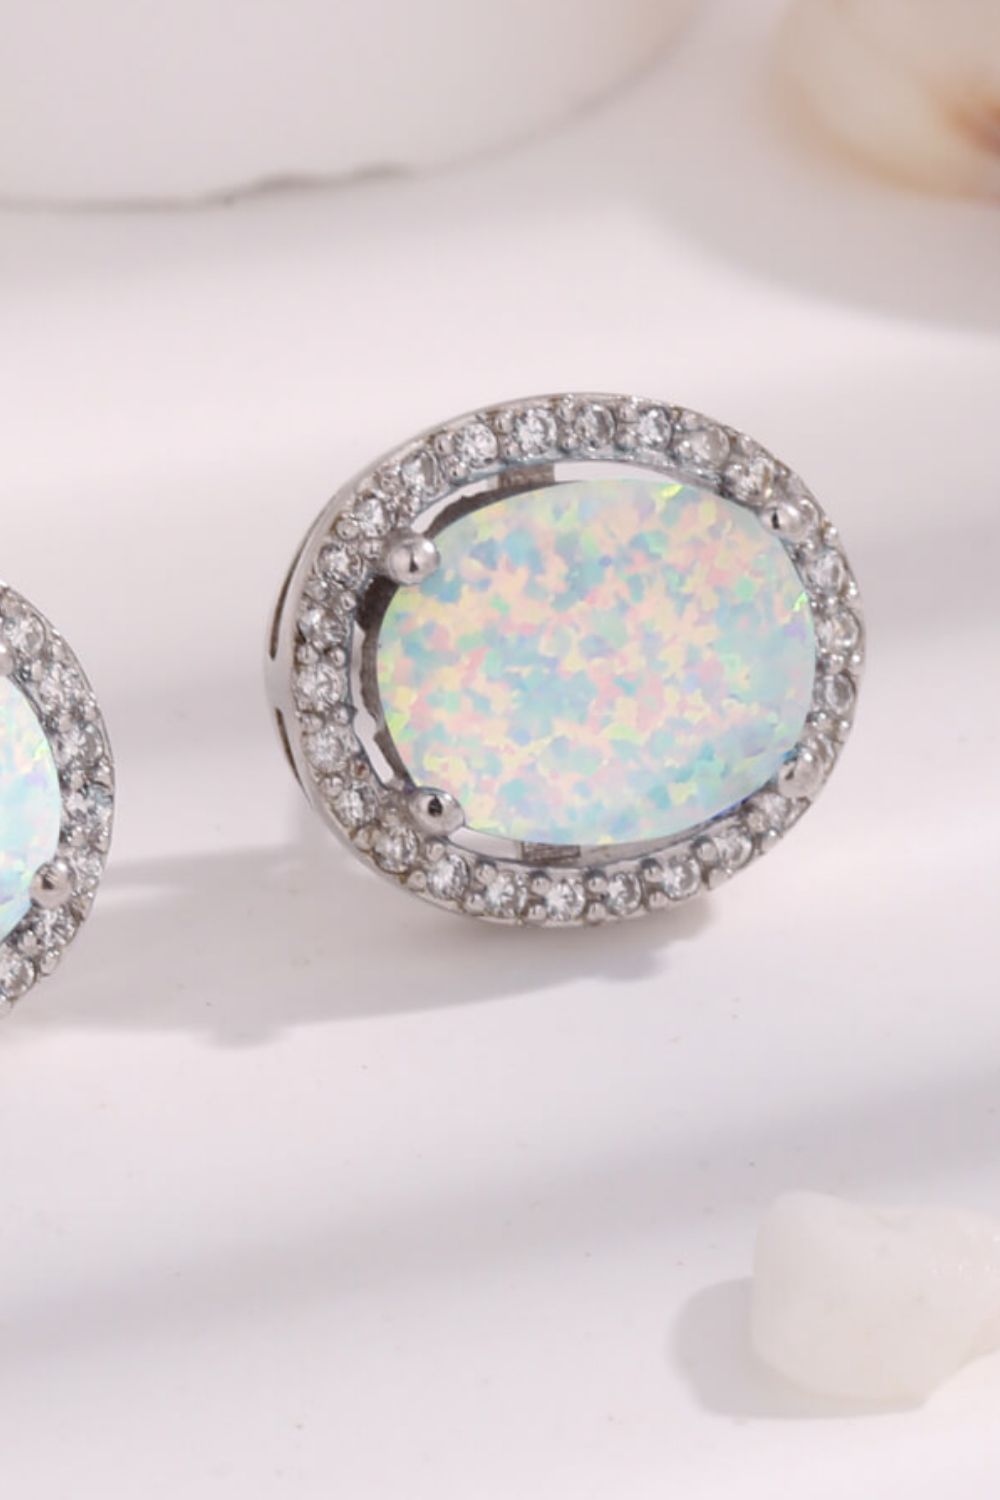 Opal Round 925 Sterling Silver Earrings